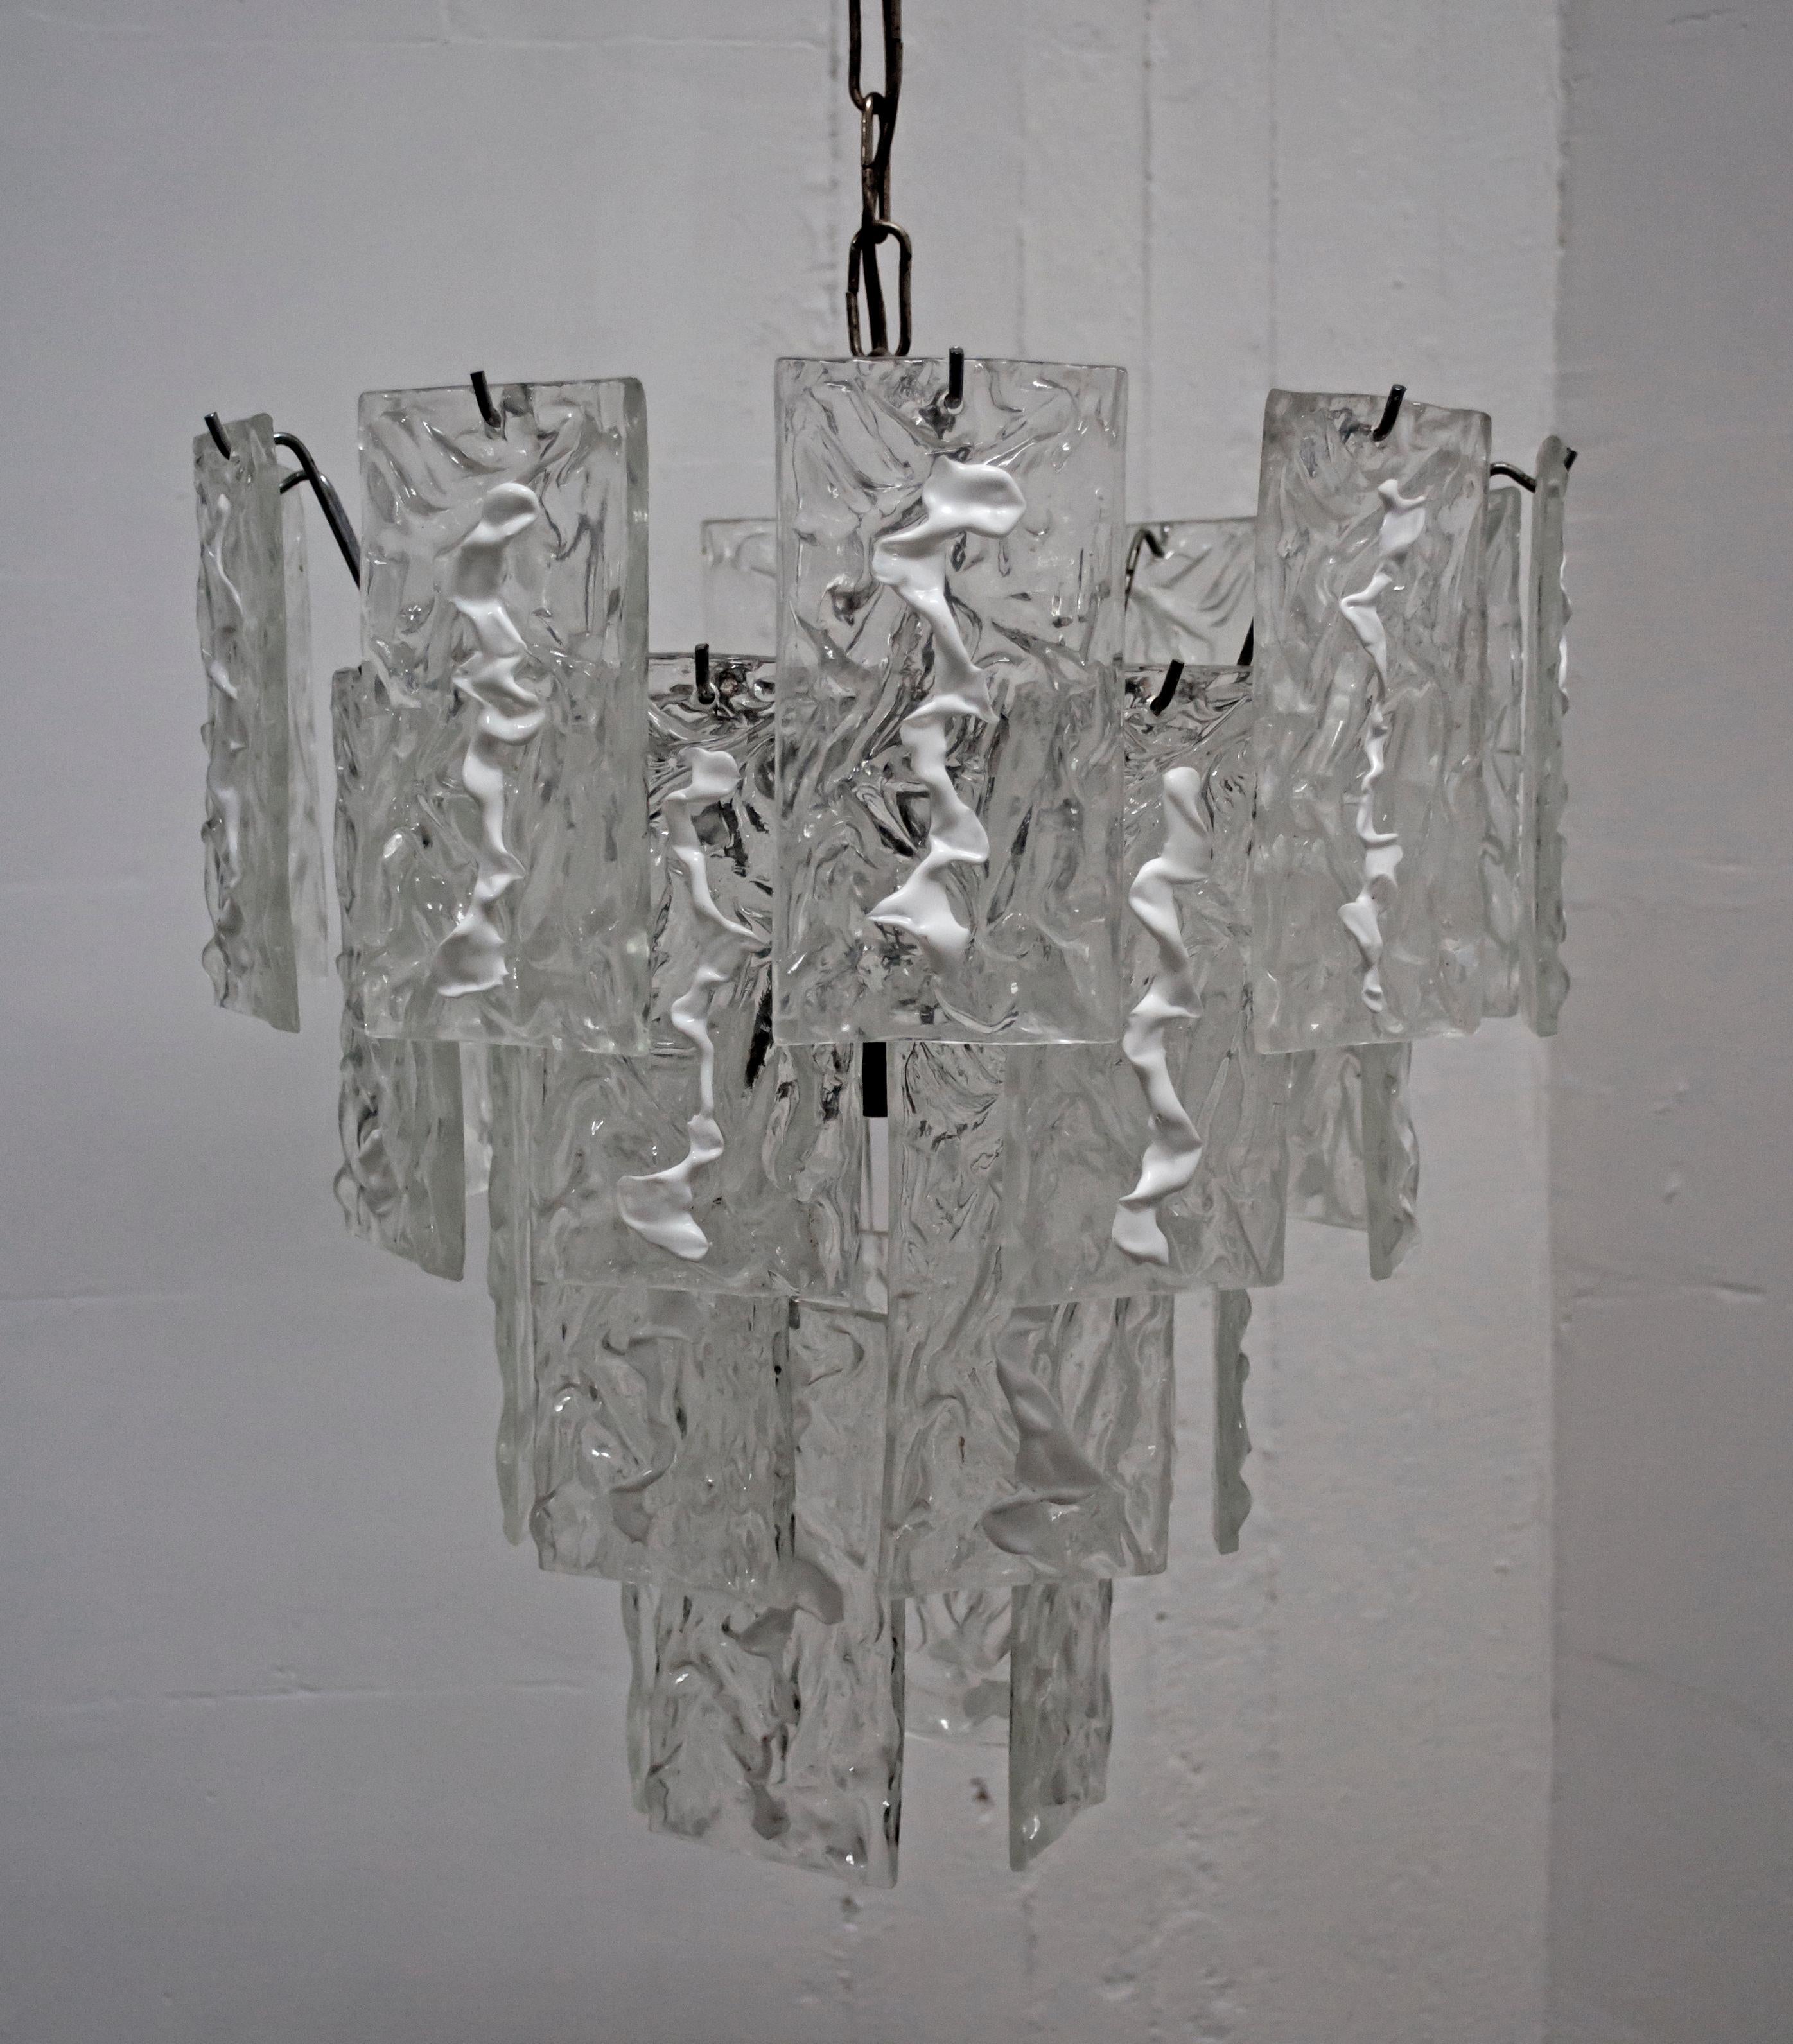 Kronleuchter aus mundgeblasenem Muranoglas, kristallene Farbe und transparentes Eis-gefertigt Lattimo von Carlo Nason für Mazzega entworfen.

